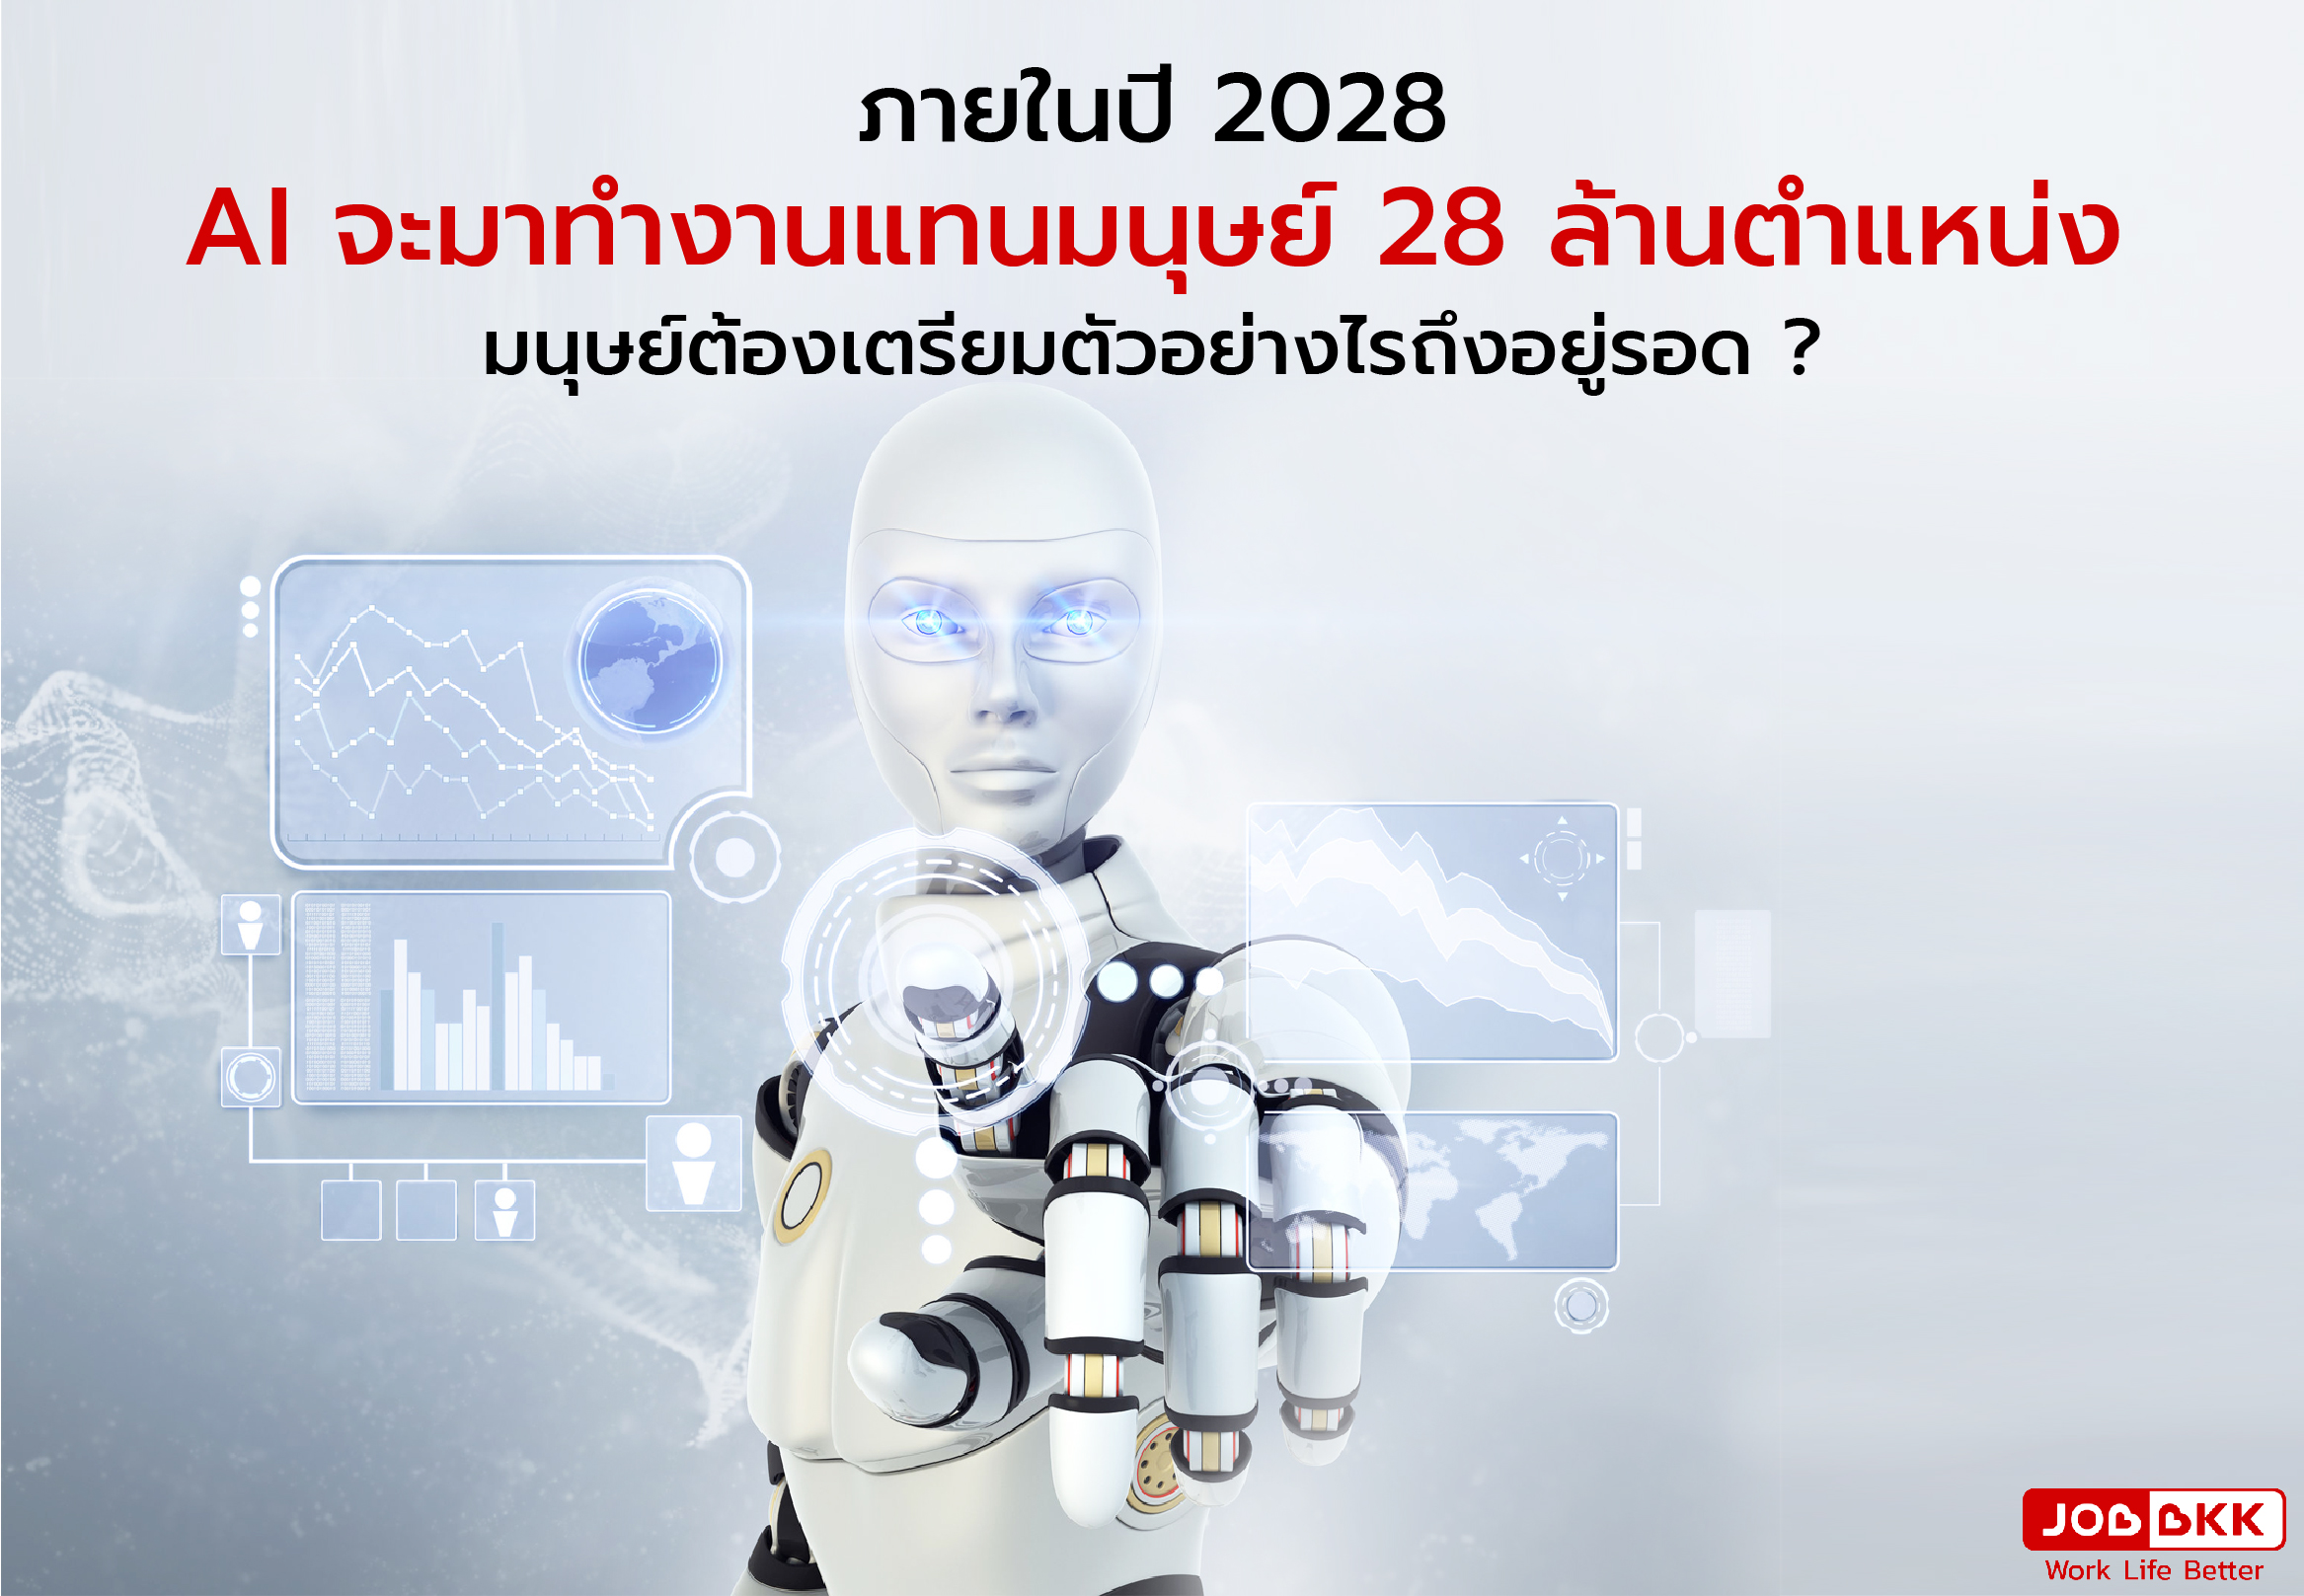 หางาน,สมัครงาน,งาน,ภายในปี 2028  AI จะมาทำงานแทนมนุษย์ 28 ล้านตำแหน่ง มนุษย์ต้องเตรียมตัวอย่างไรถึงอยู่รอด ?